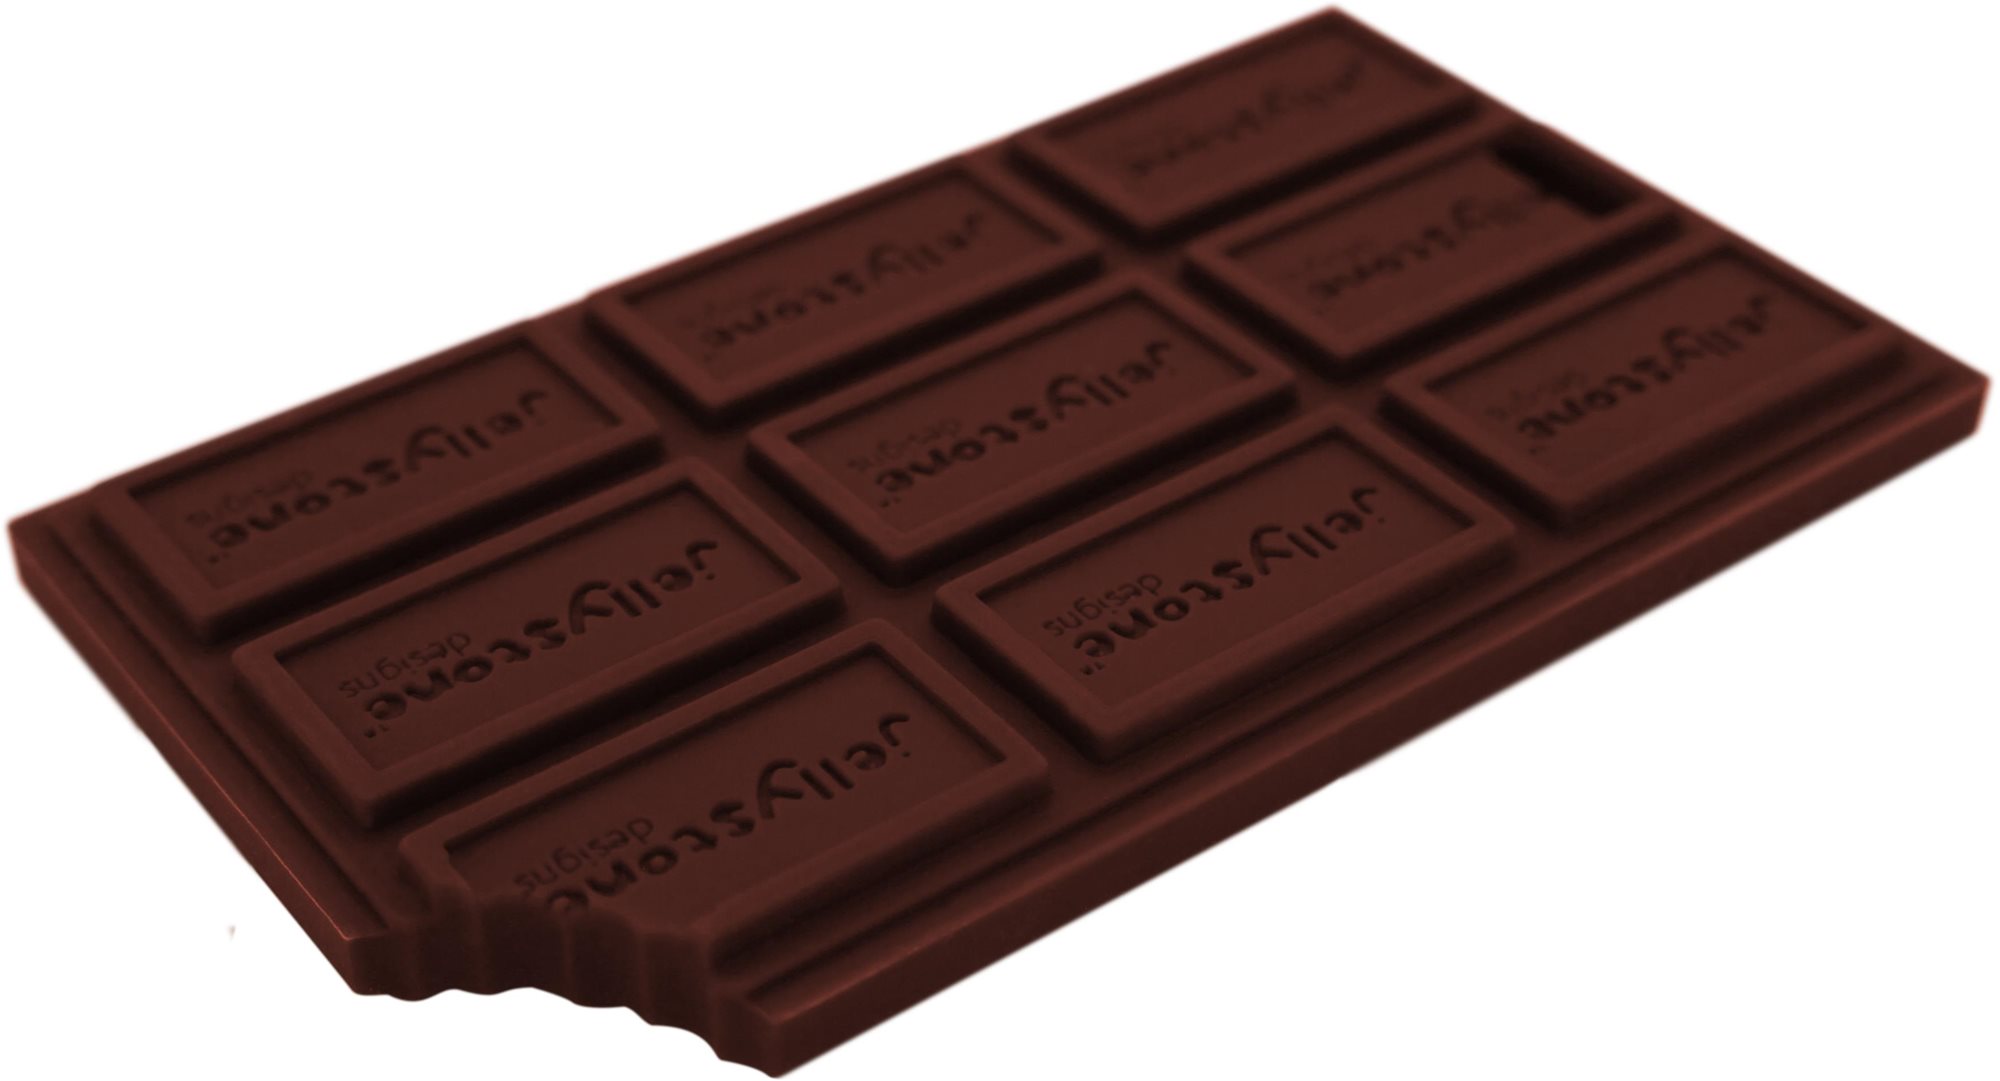 Jellystone Designs Rágóka - Csokoládé